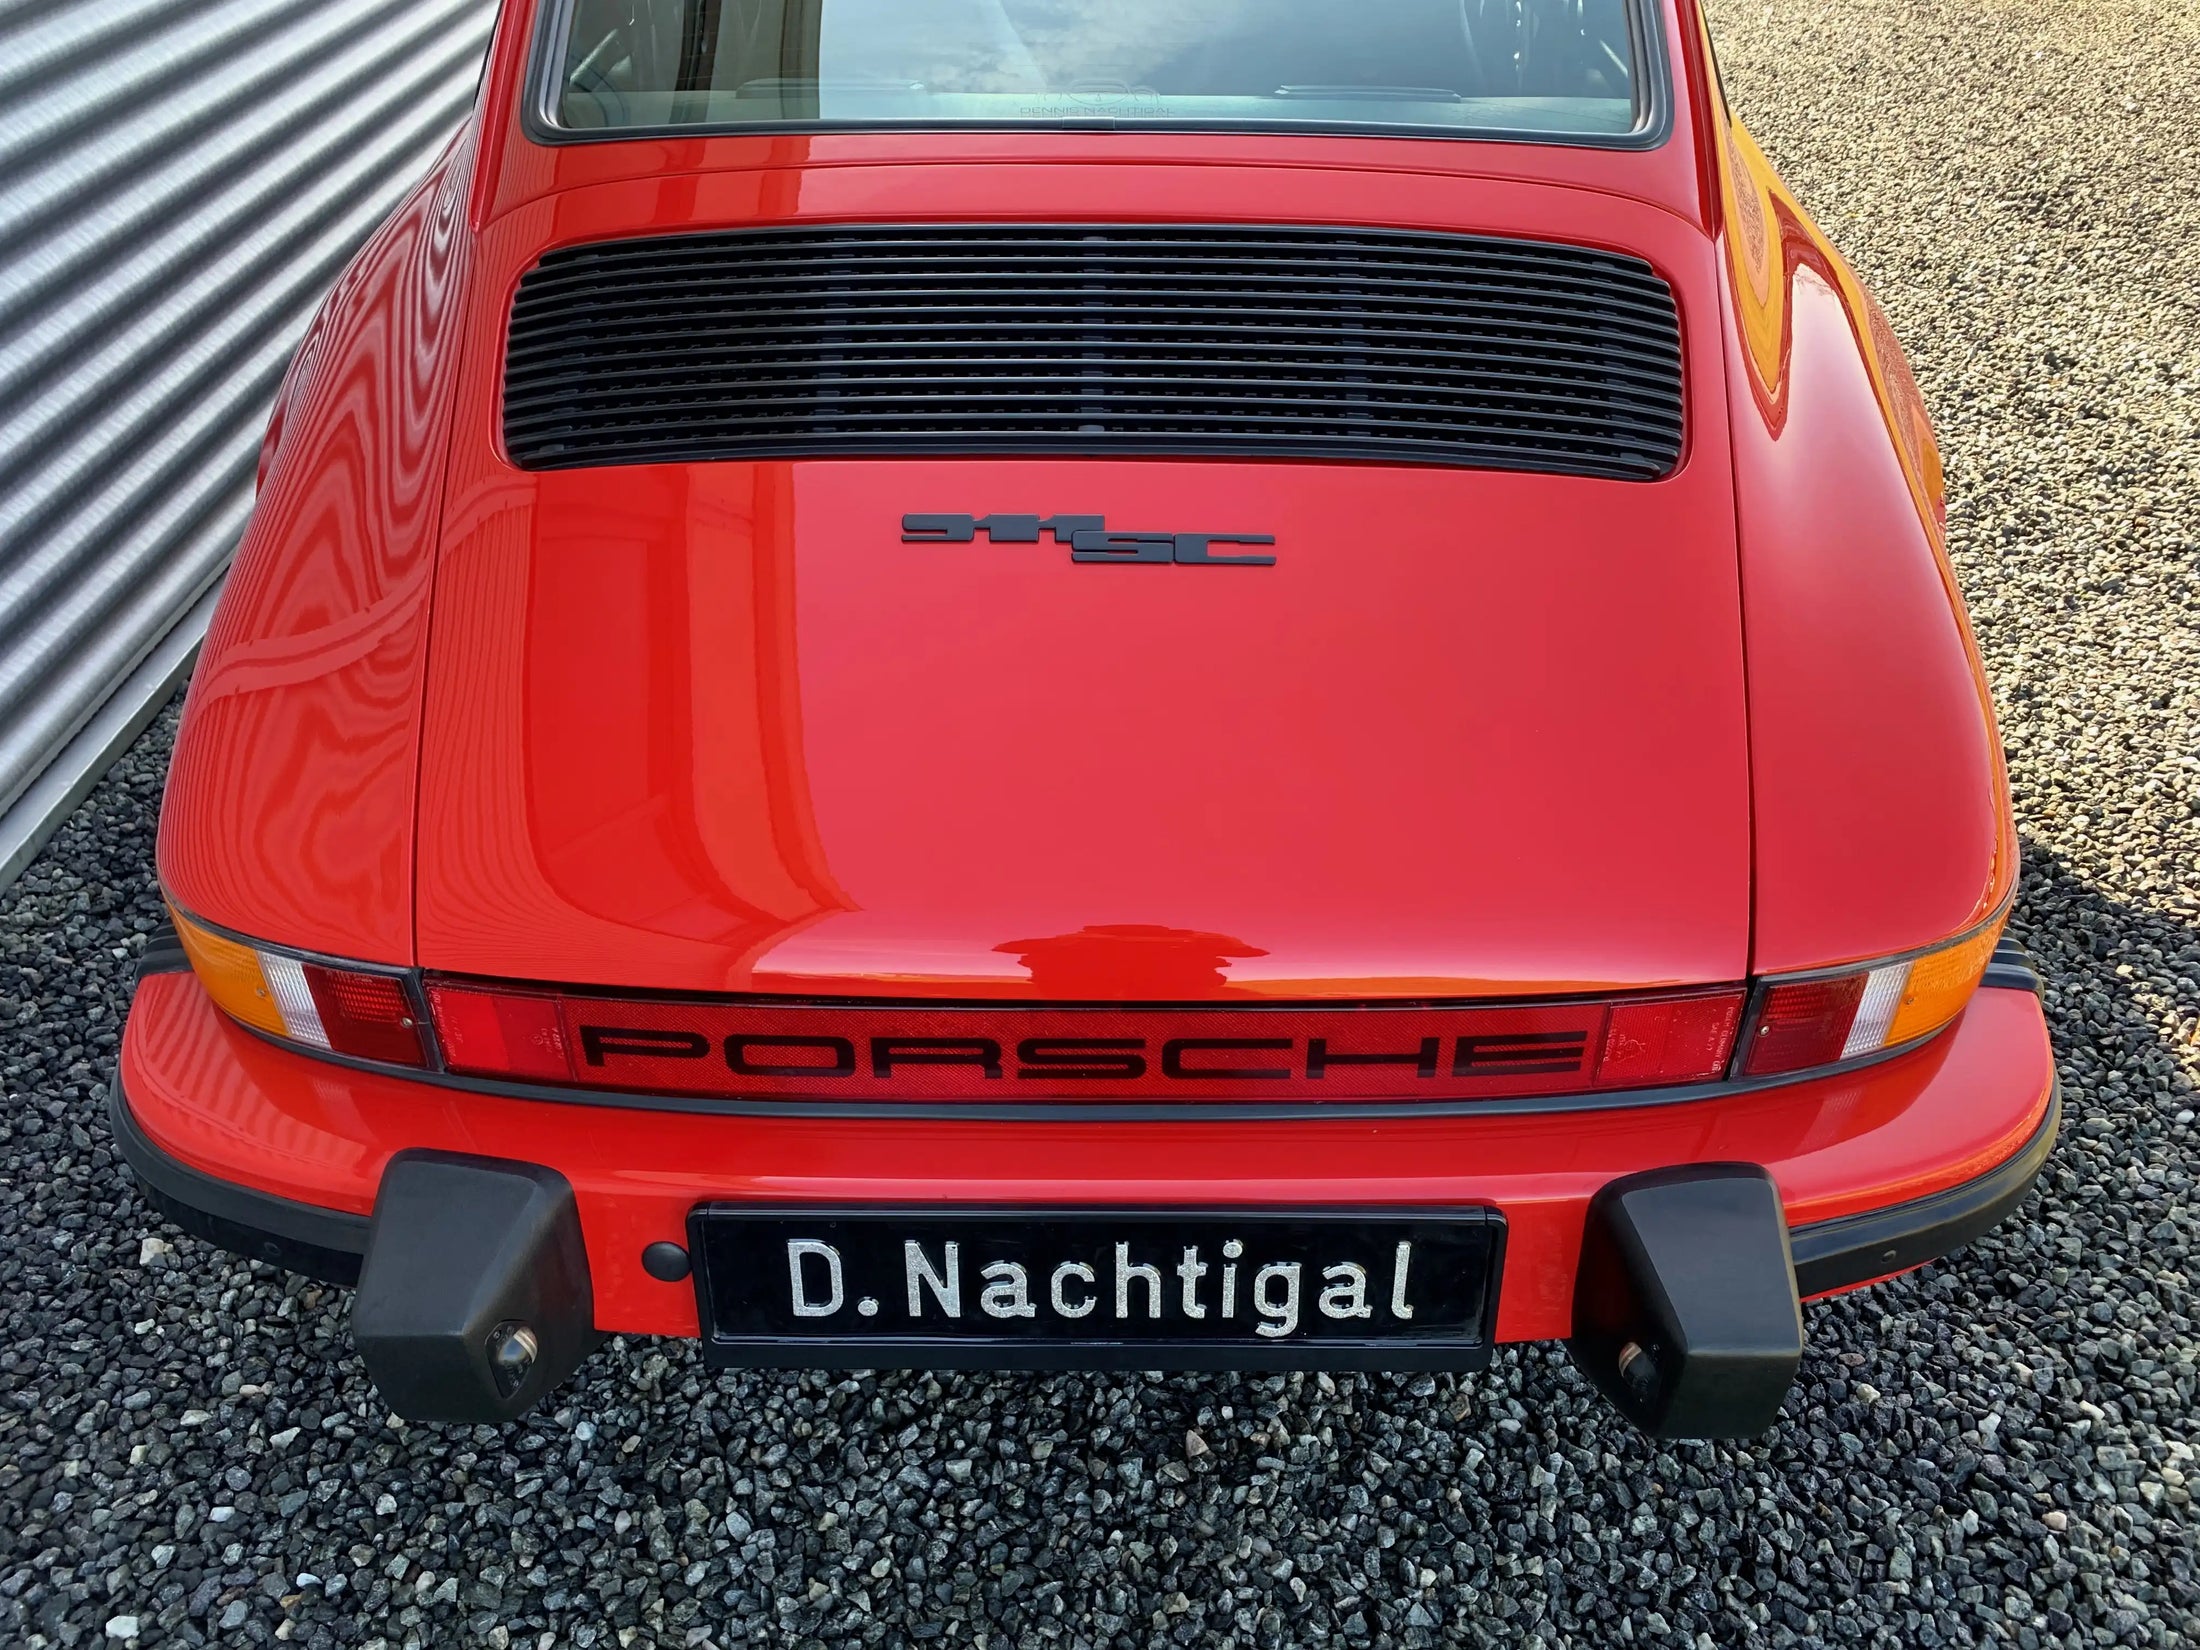 Porsche 911 SC 3.0 Coupé 1983, Dennis Nachtigal